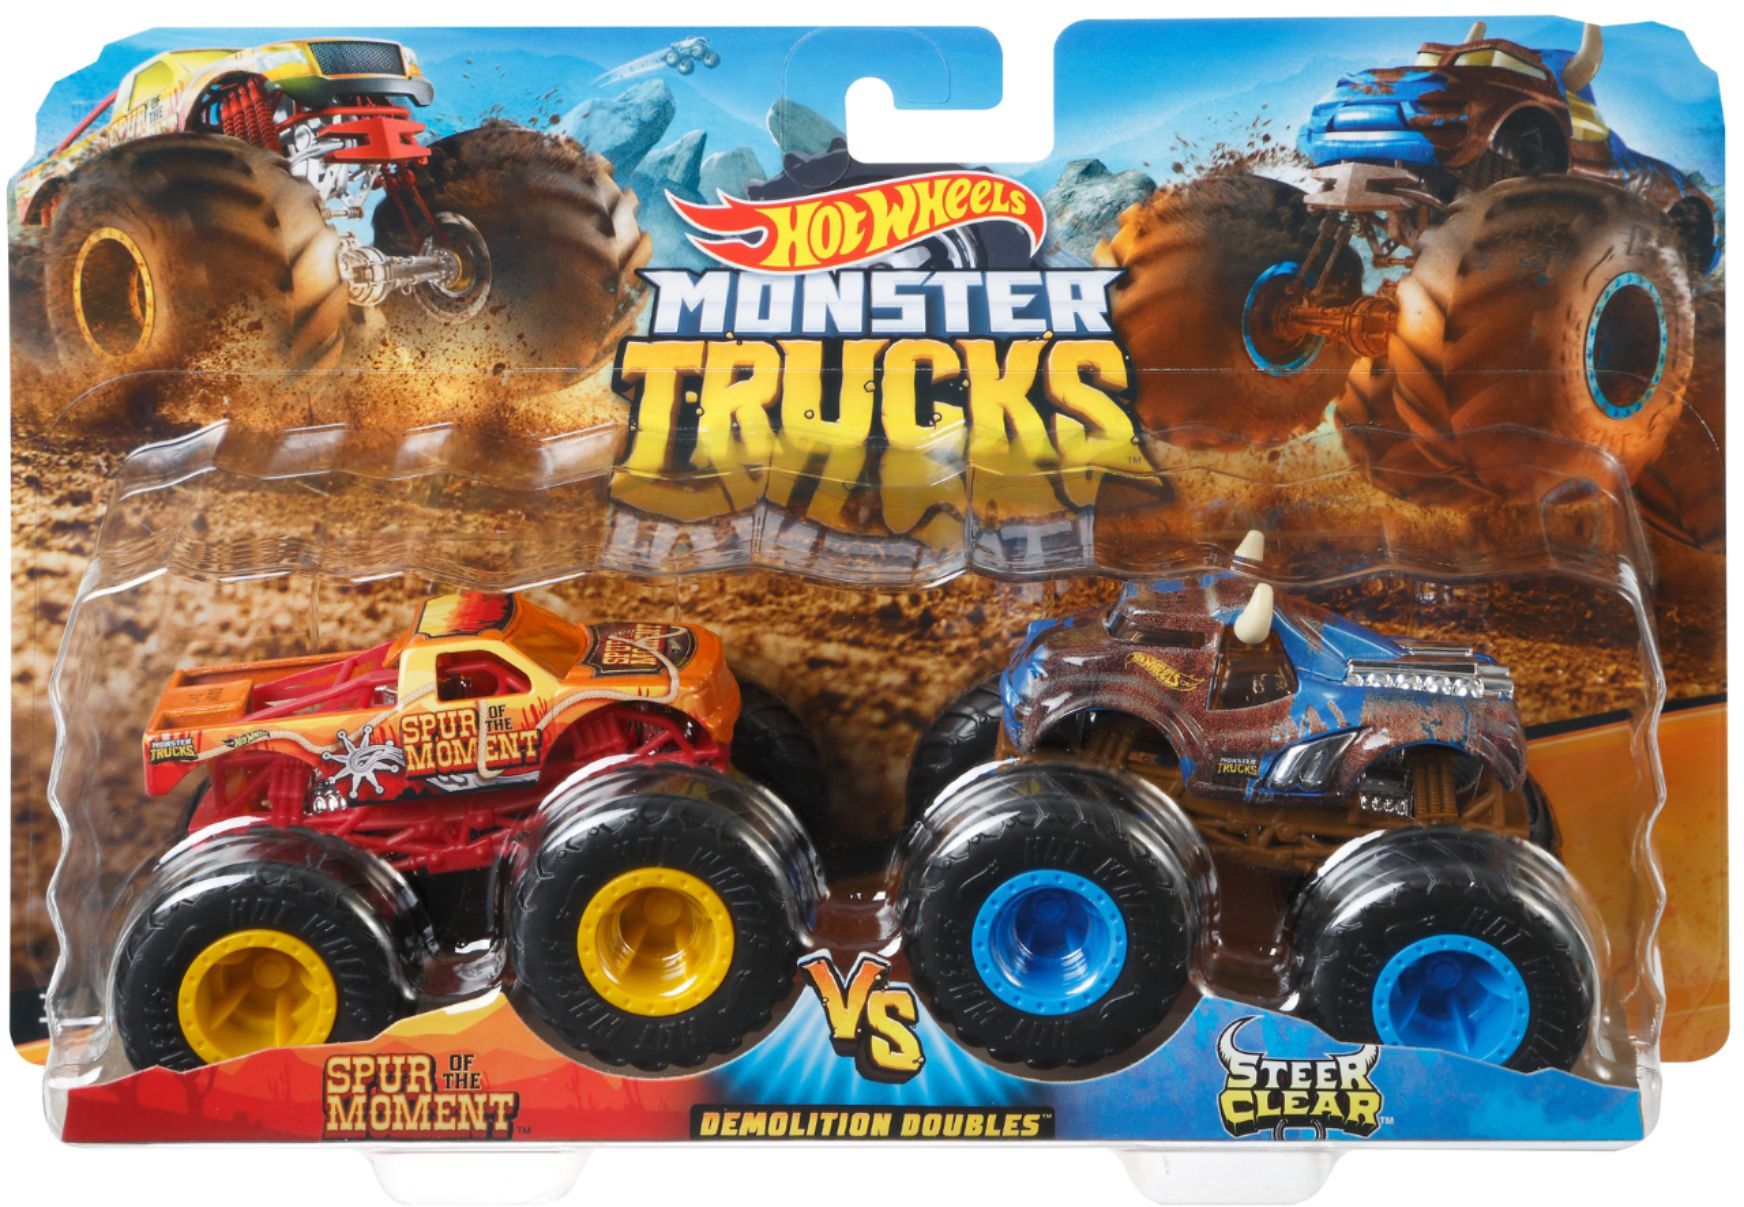 Pack Hot Wheels Monster Trucks